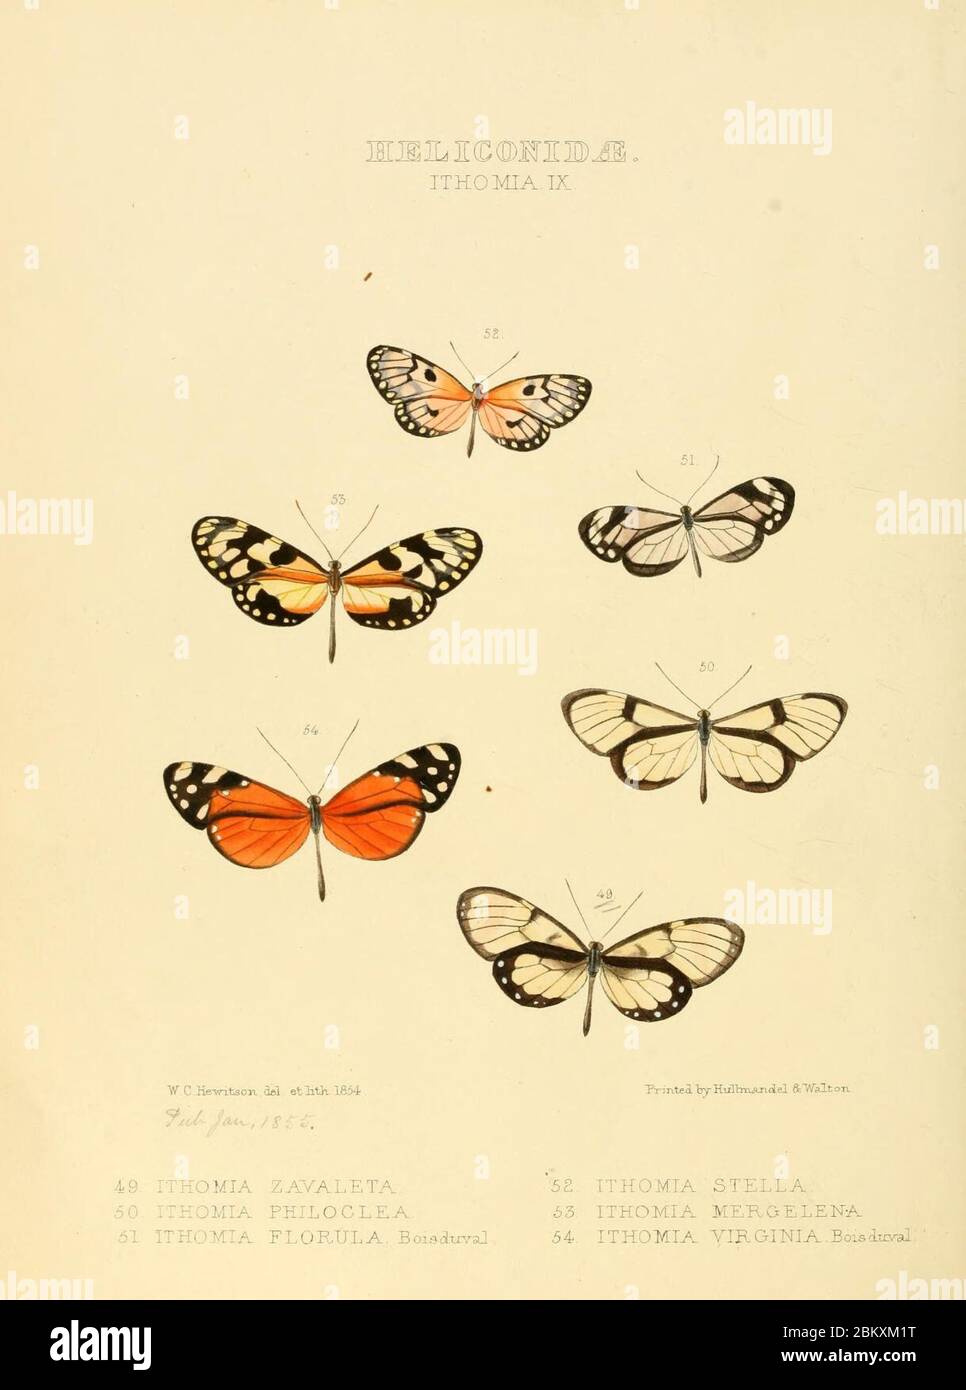 Illustrazioni di nuove specie di farfalle esotiche (Heliconidae- Ithomia IX) Foto Stock